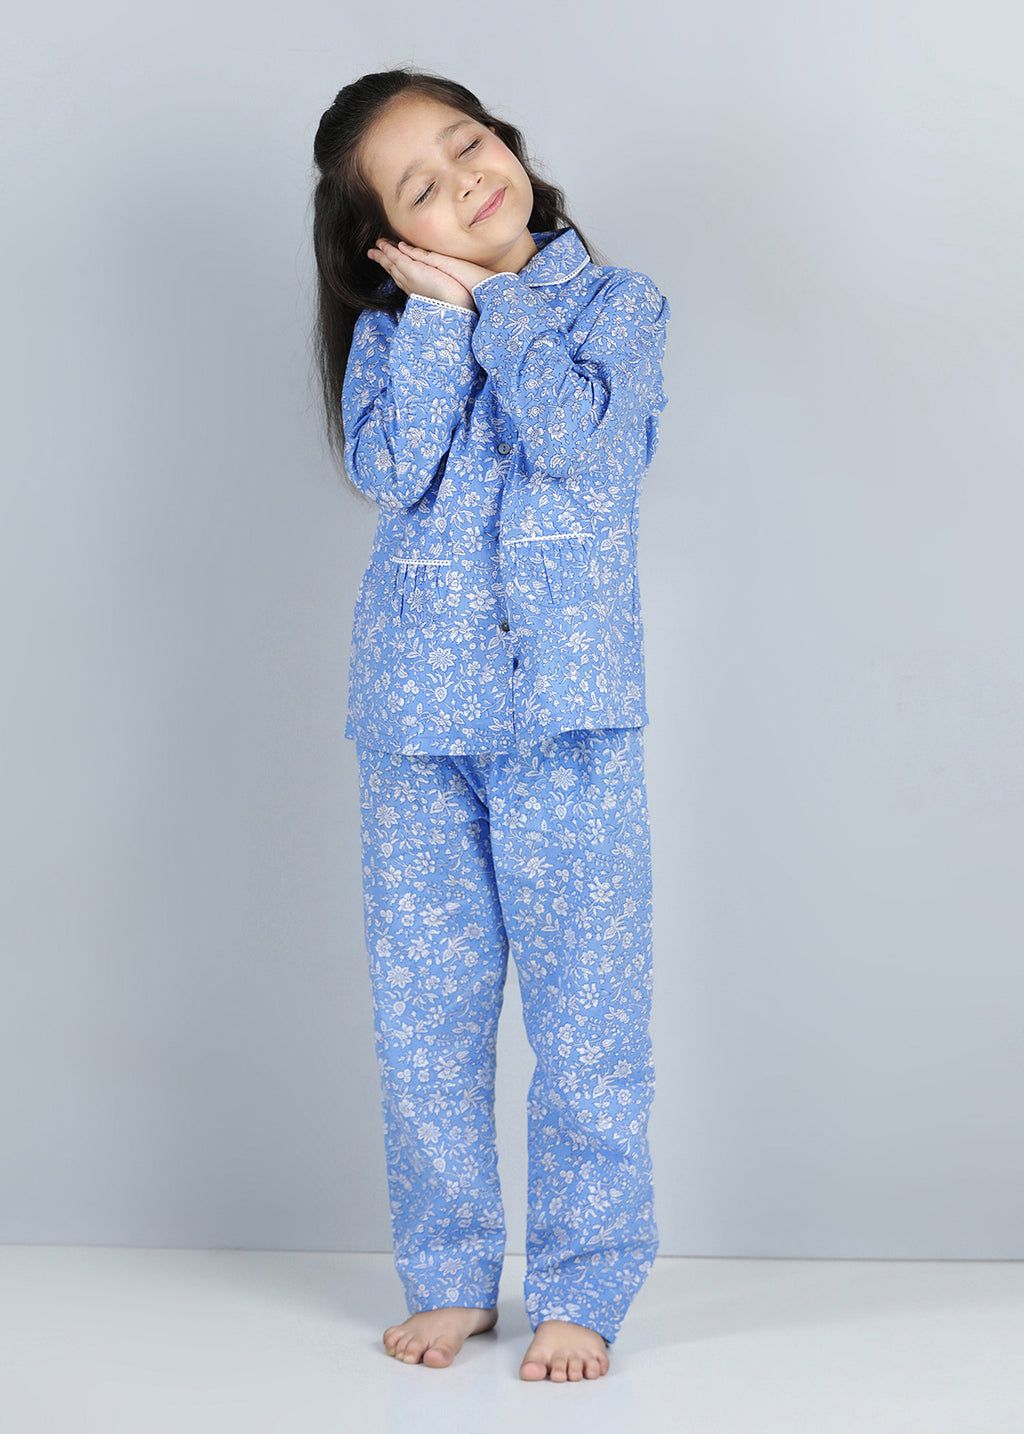 Buy Jaal Blue Full Sleeves Cotton Nighsuit Girl Online - Rajasthan - Jaipur ID1551800